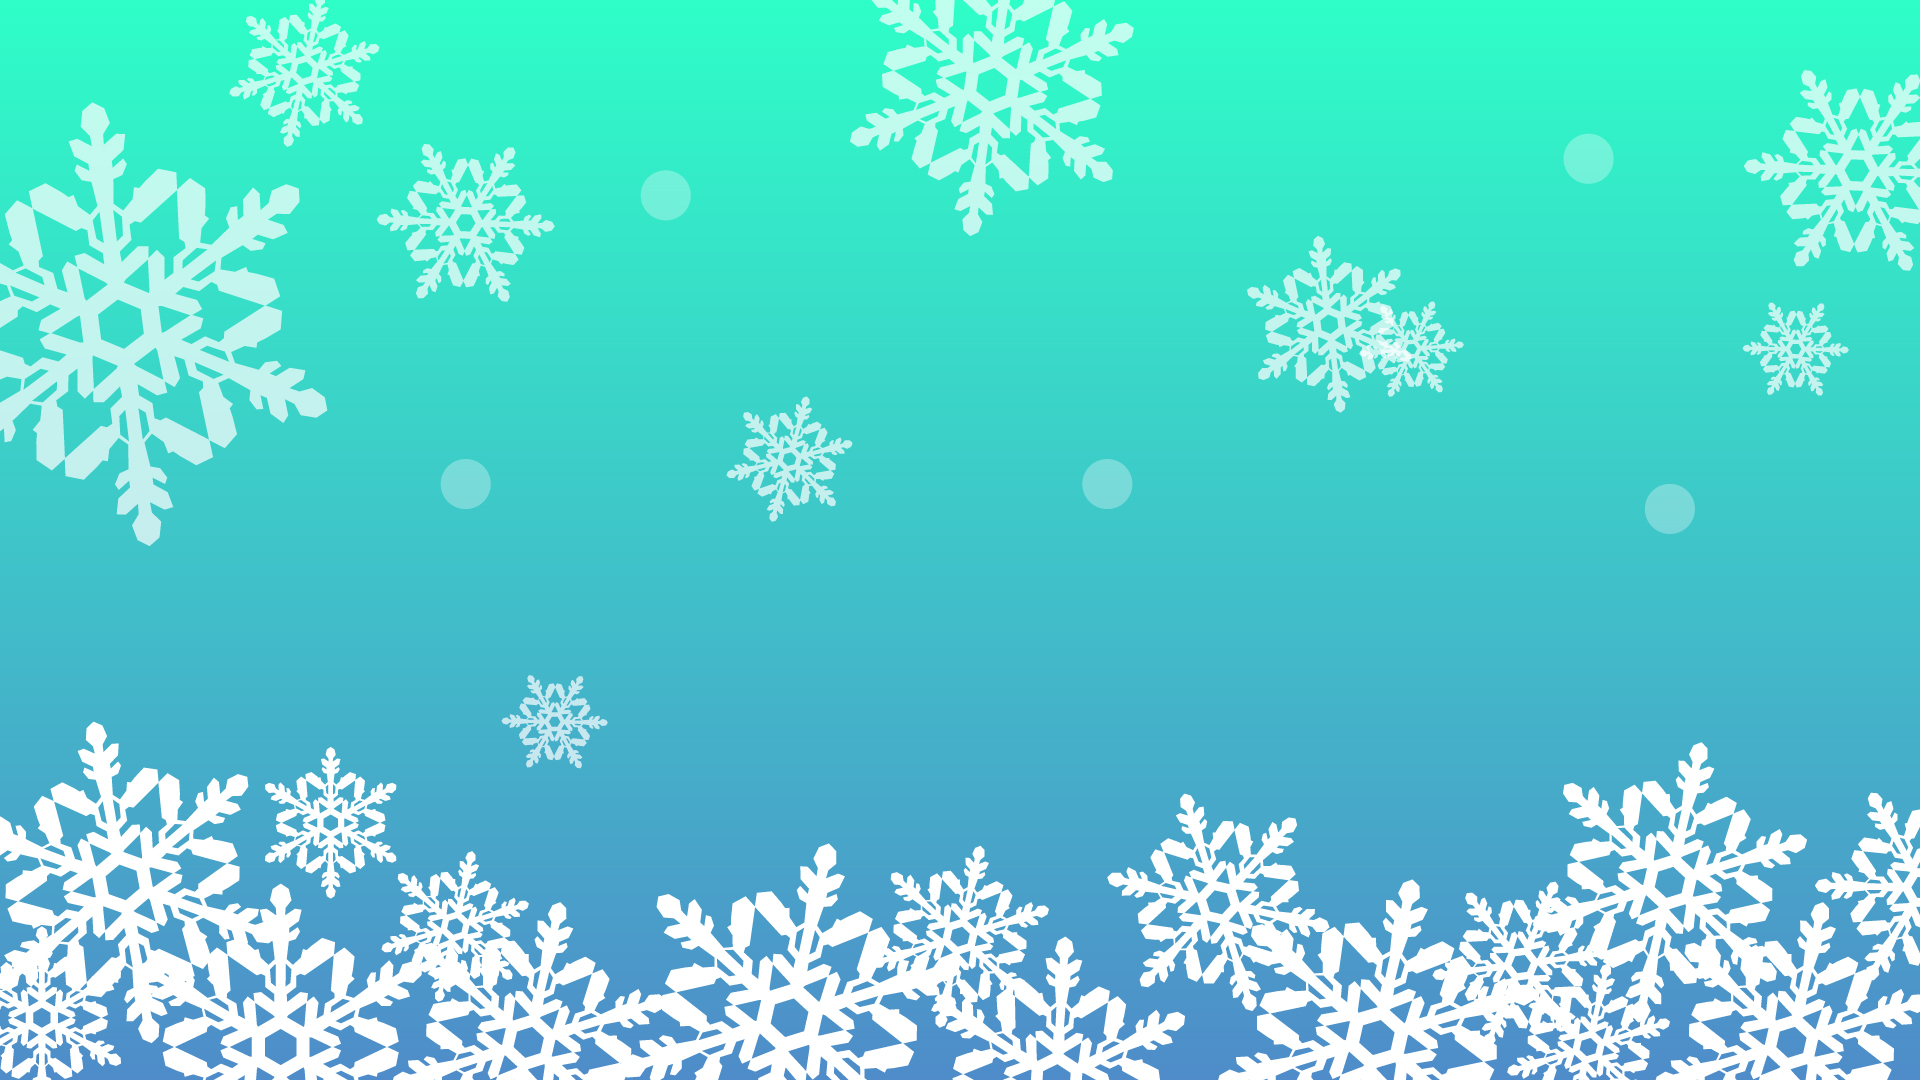 冬をイメージした雪の結晶の壁紙 背景素材 1 920px 1 080px イラスト無料 かわいいテンプレート